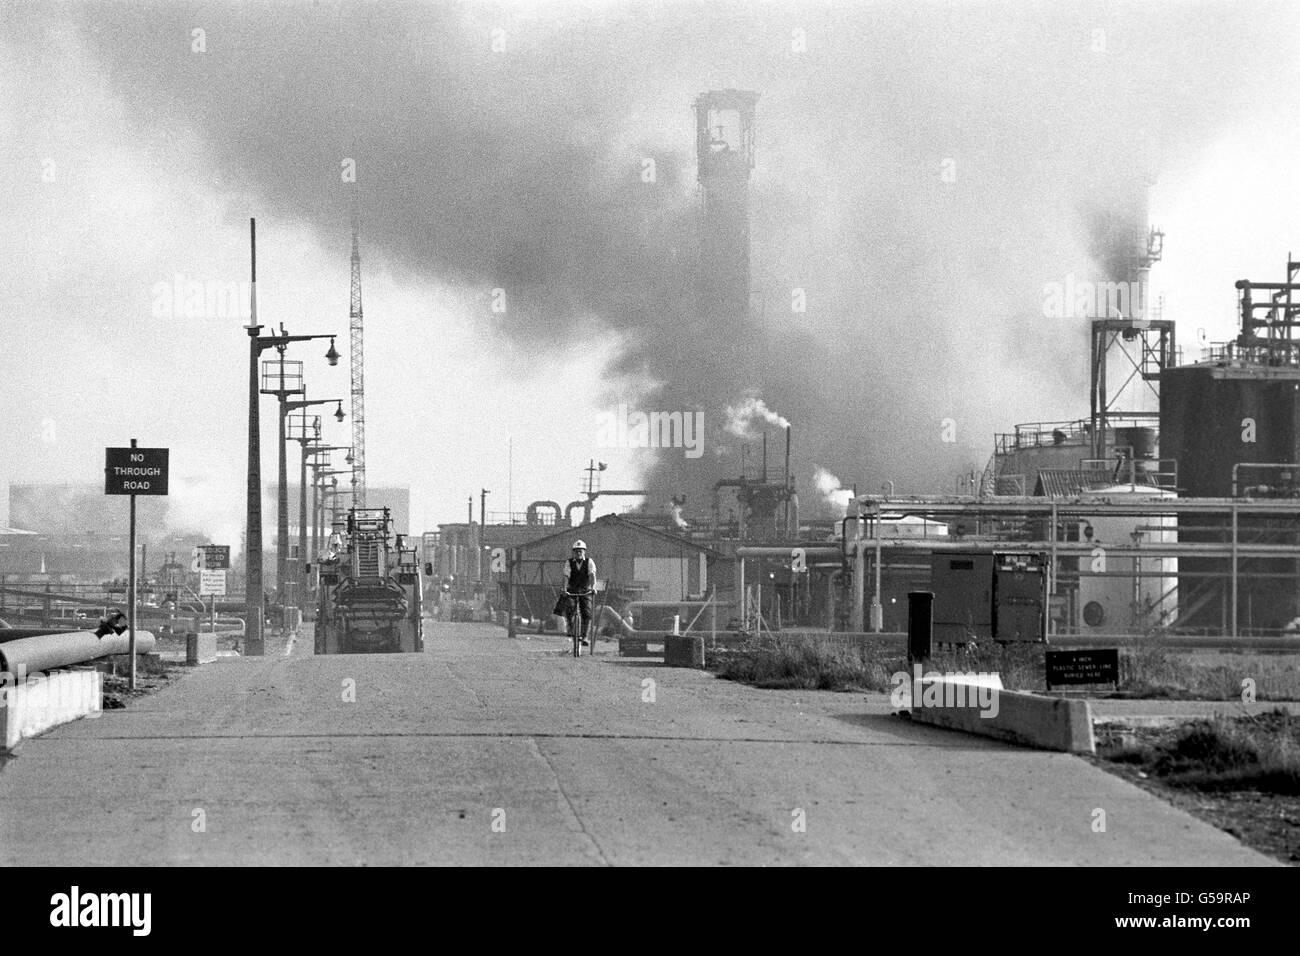 La fumée continue d'augmenter au cœur de la grande raffinerie de pétrole Shell Haven, alors que des centaines de pompiers confinent le feu à l'unité de distillation. C'était le troisième feu à la raffinerie Thames en trois ans. Banque D'Images